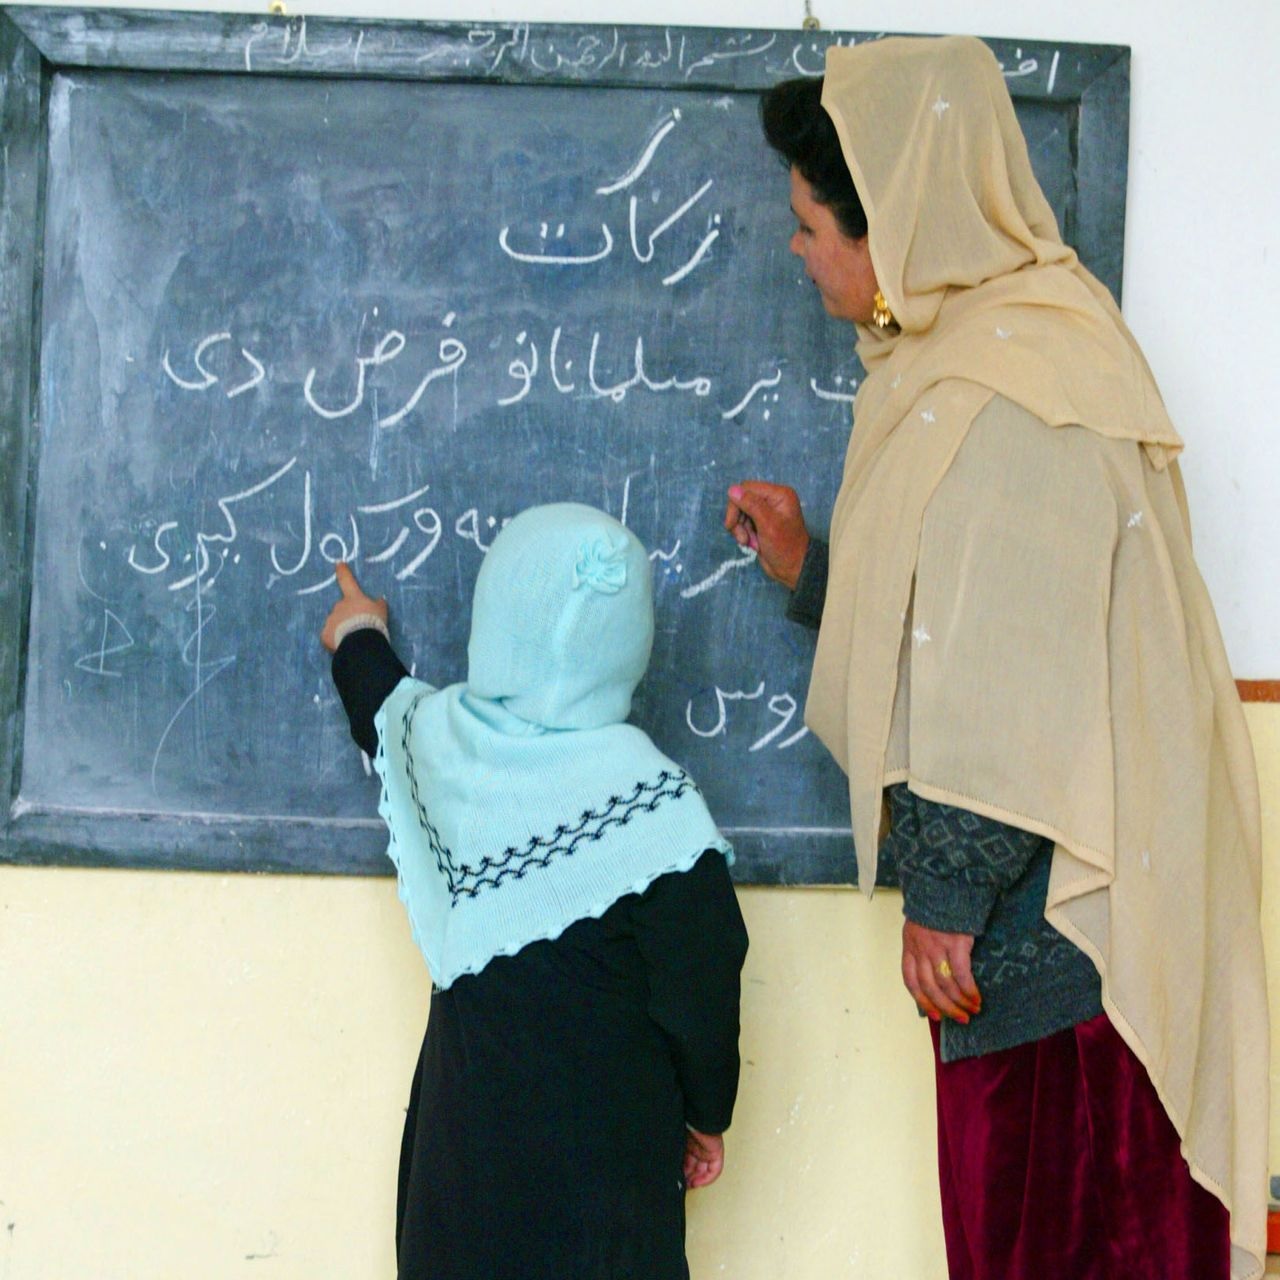 अफगानिस्तानका शिक्षिकाहरू आफ्नो भविश्यका बारेमा चिन्तित